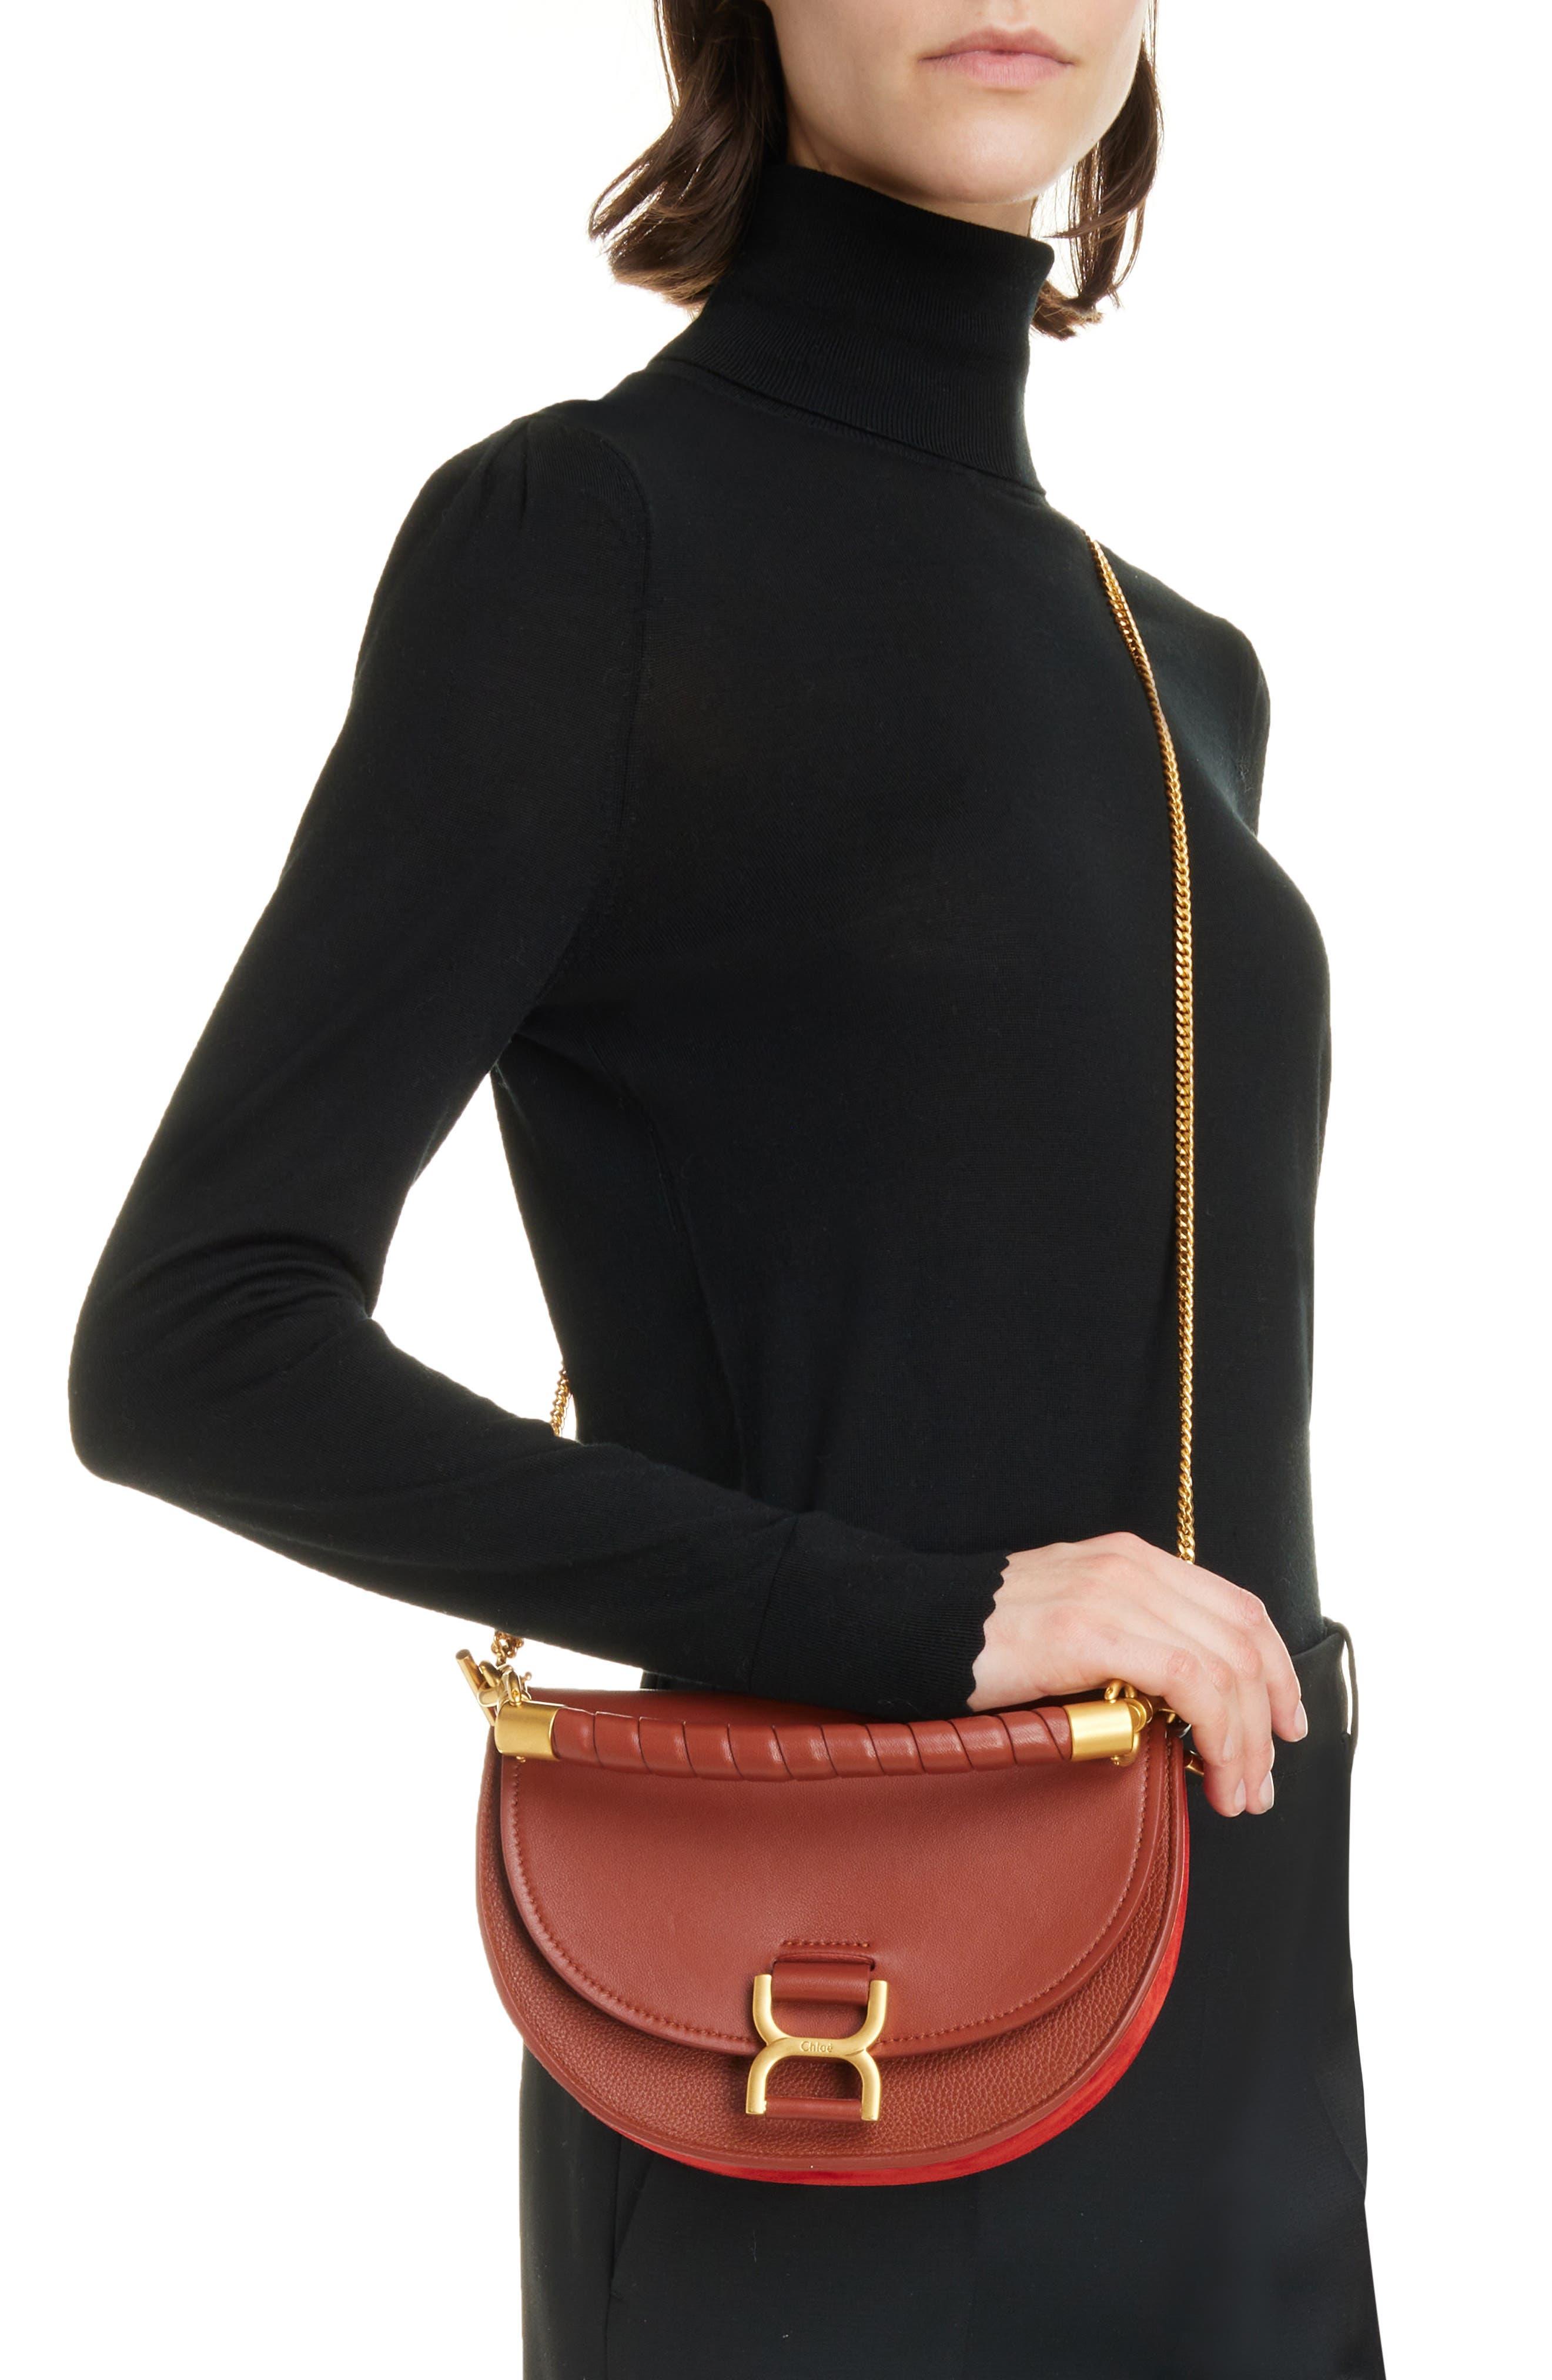 Chloé Marcie Leather Shoulder Bag - Red Shoulder Bags, Handbags - CHL266255